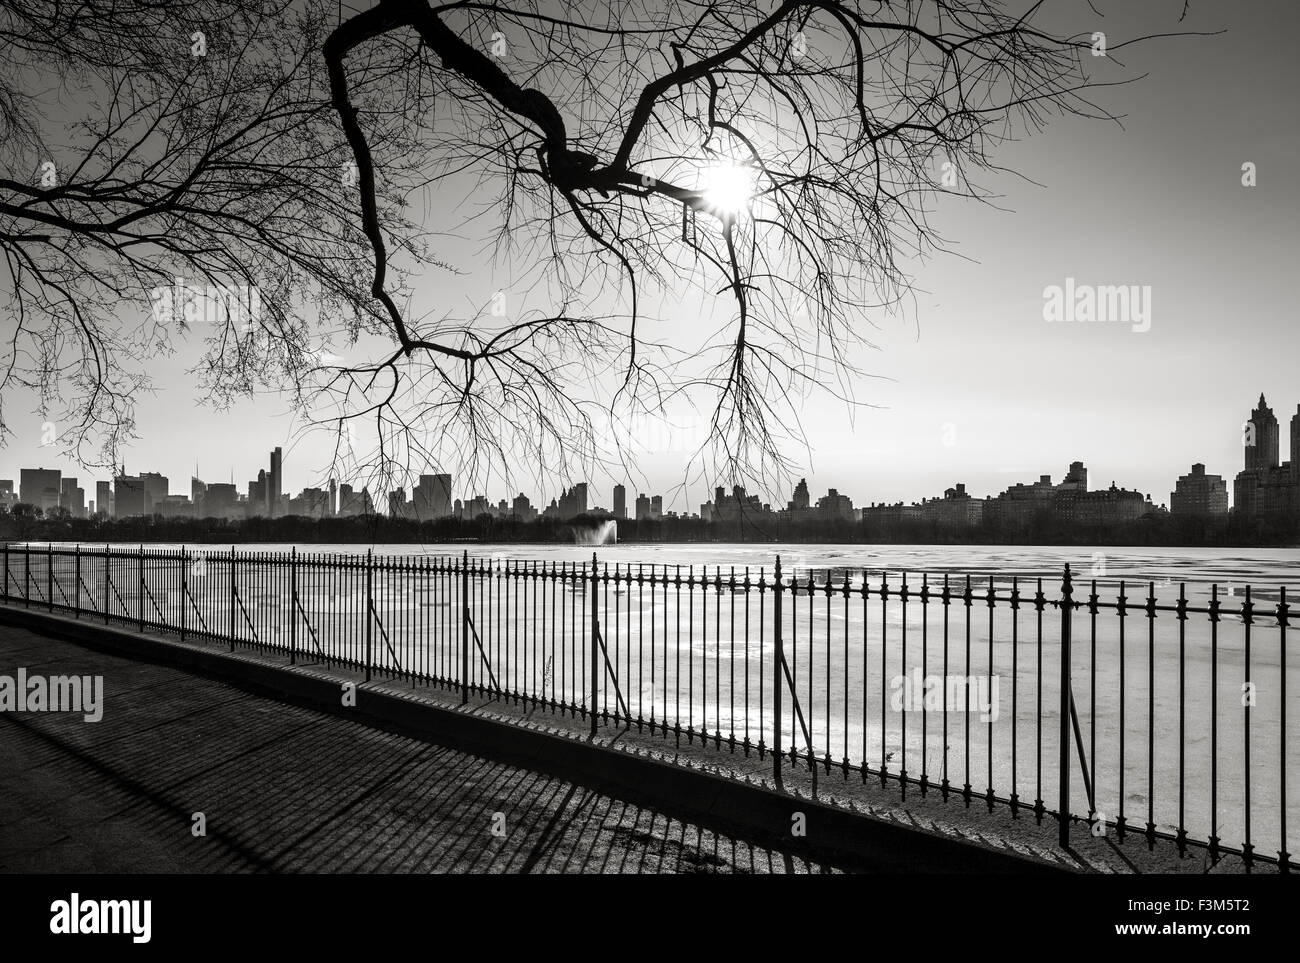 Photographie en noir et blanc de New York en hiver, le réservoir de Central Park et de l'Upper West Side, New York. Banque D'Images